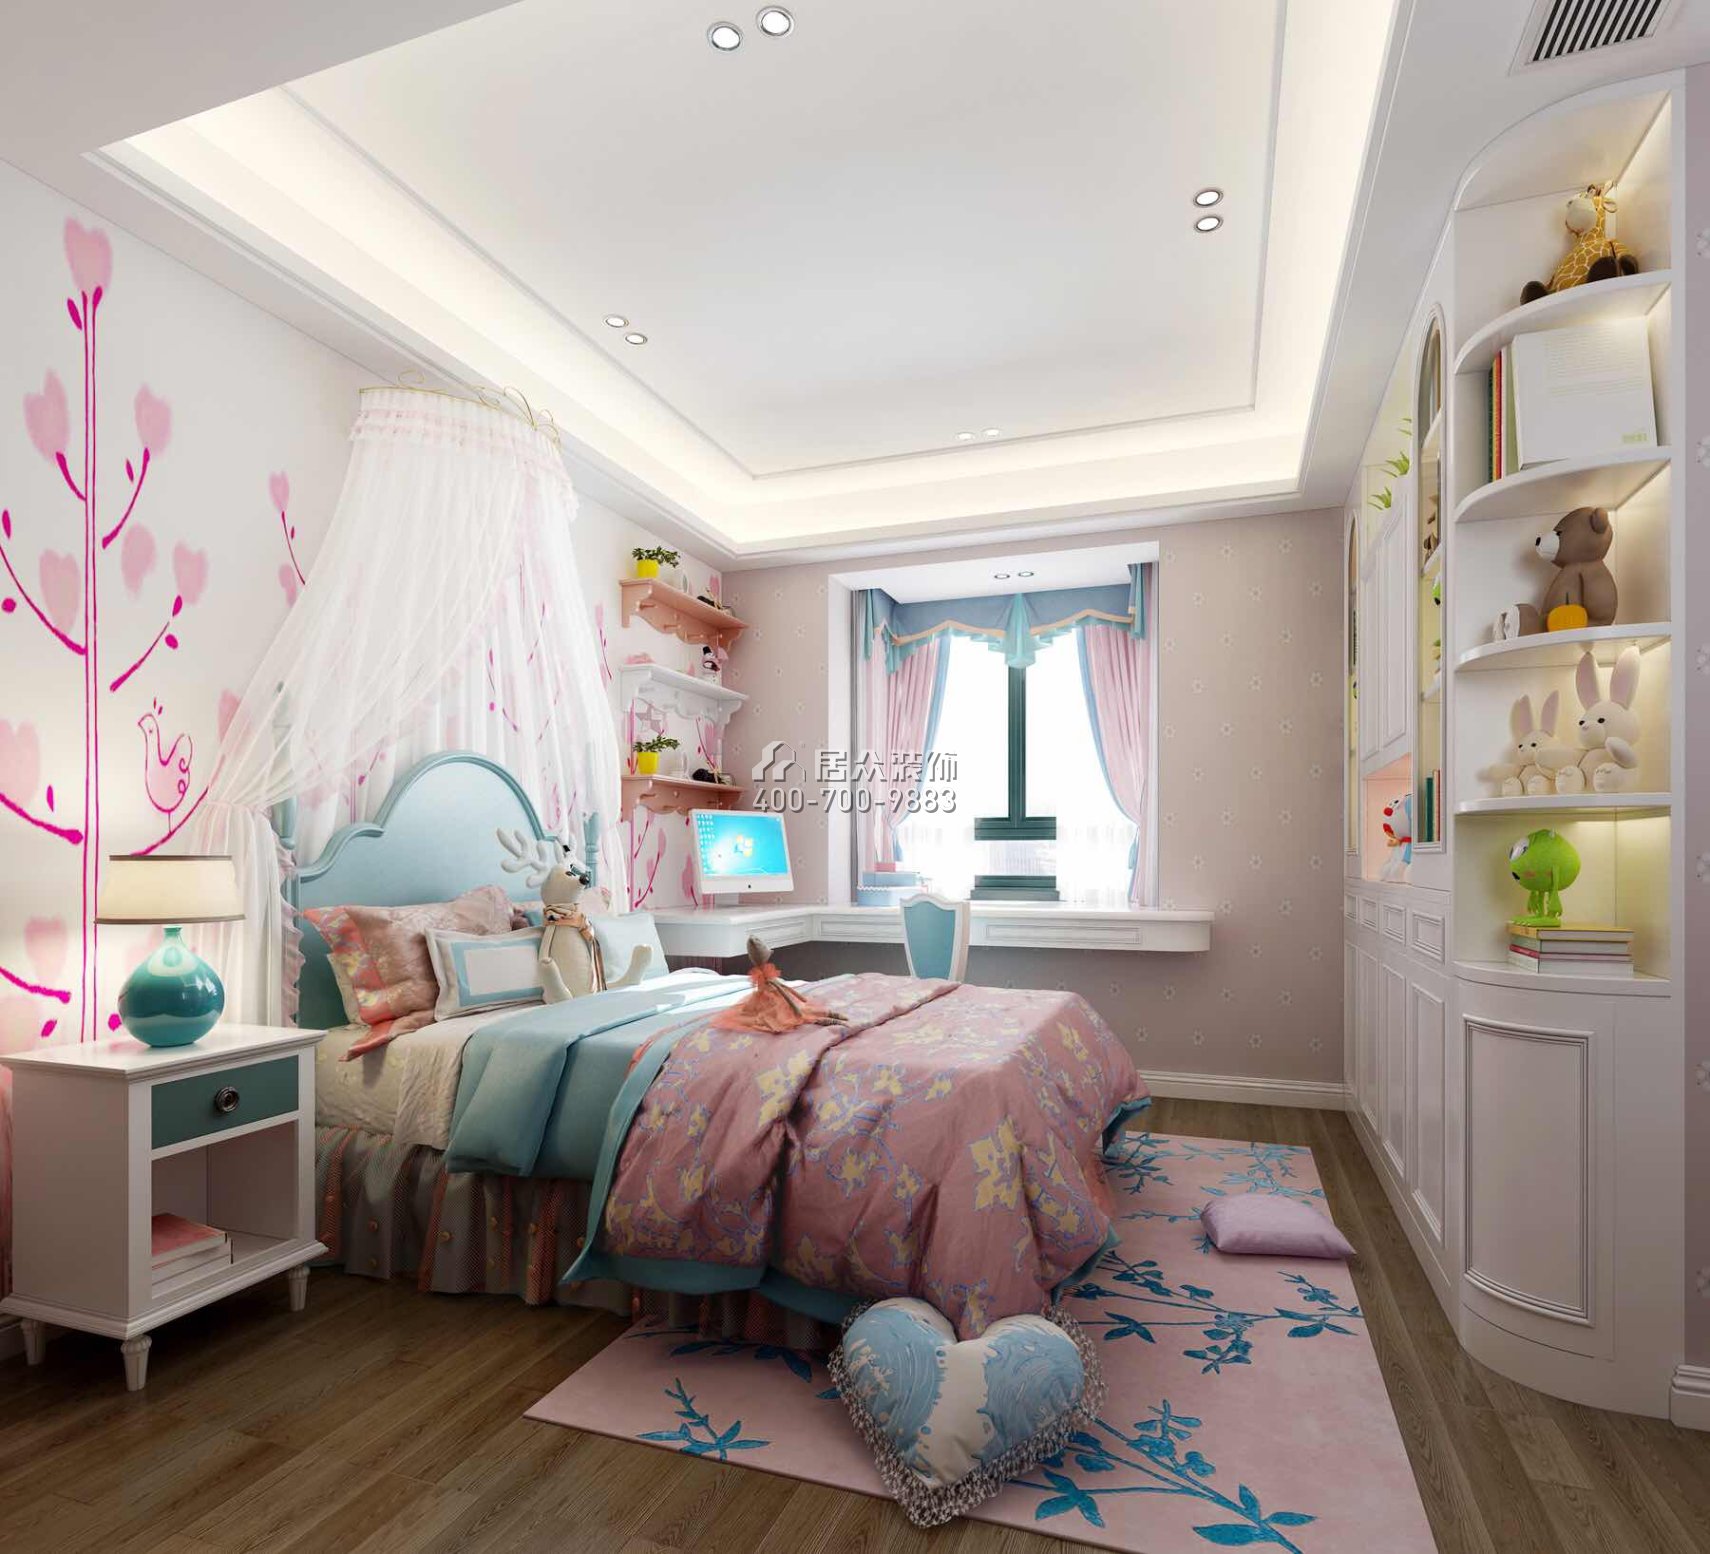 黄埔雅苑三期126平方米现代简约风格平层户型卧室装修效果图